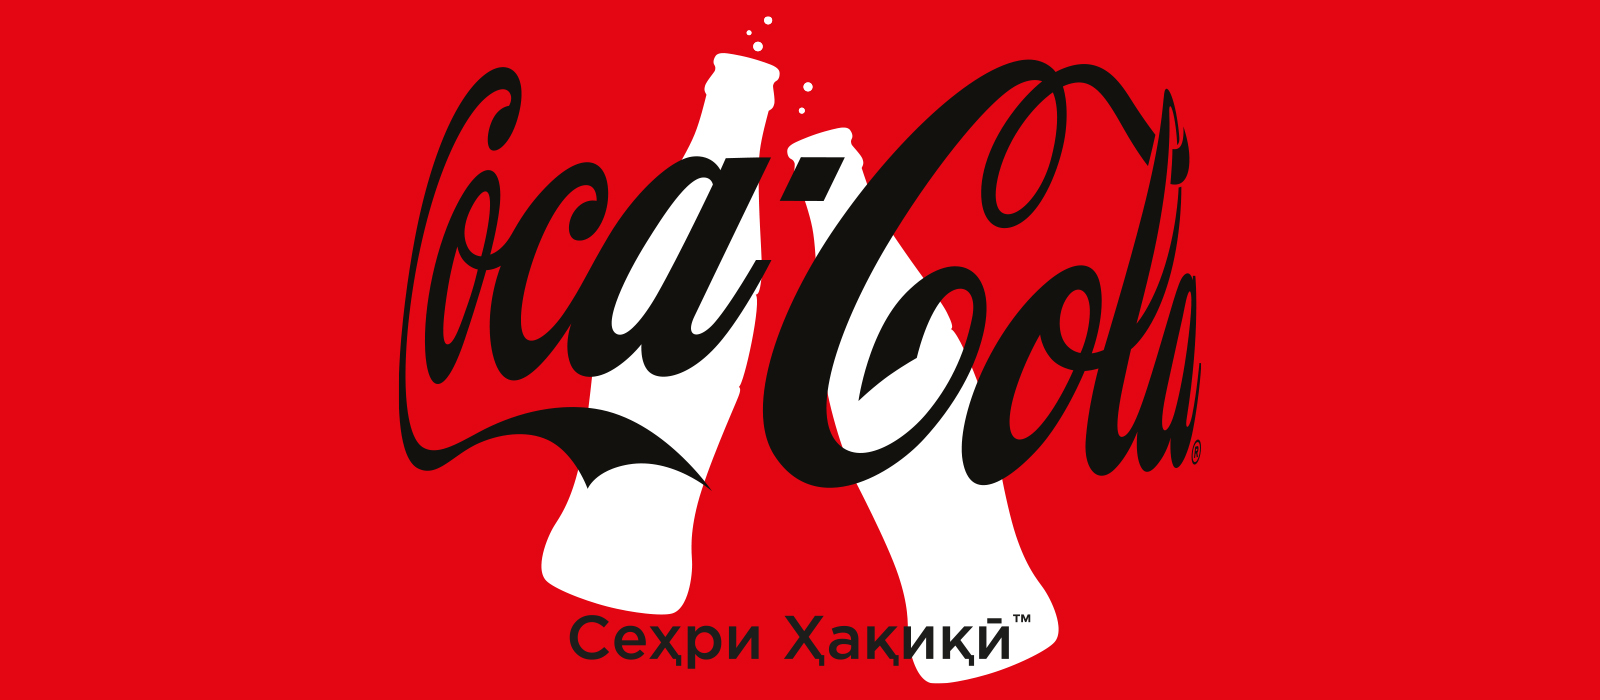 Логотип и визуальные эффекты бренда Coca-Cola Магия момента